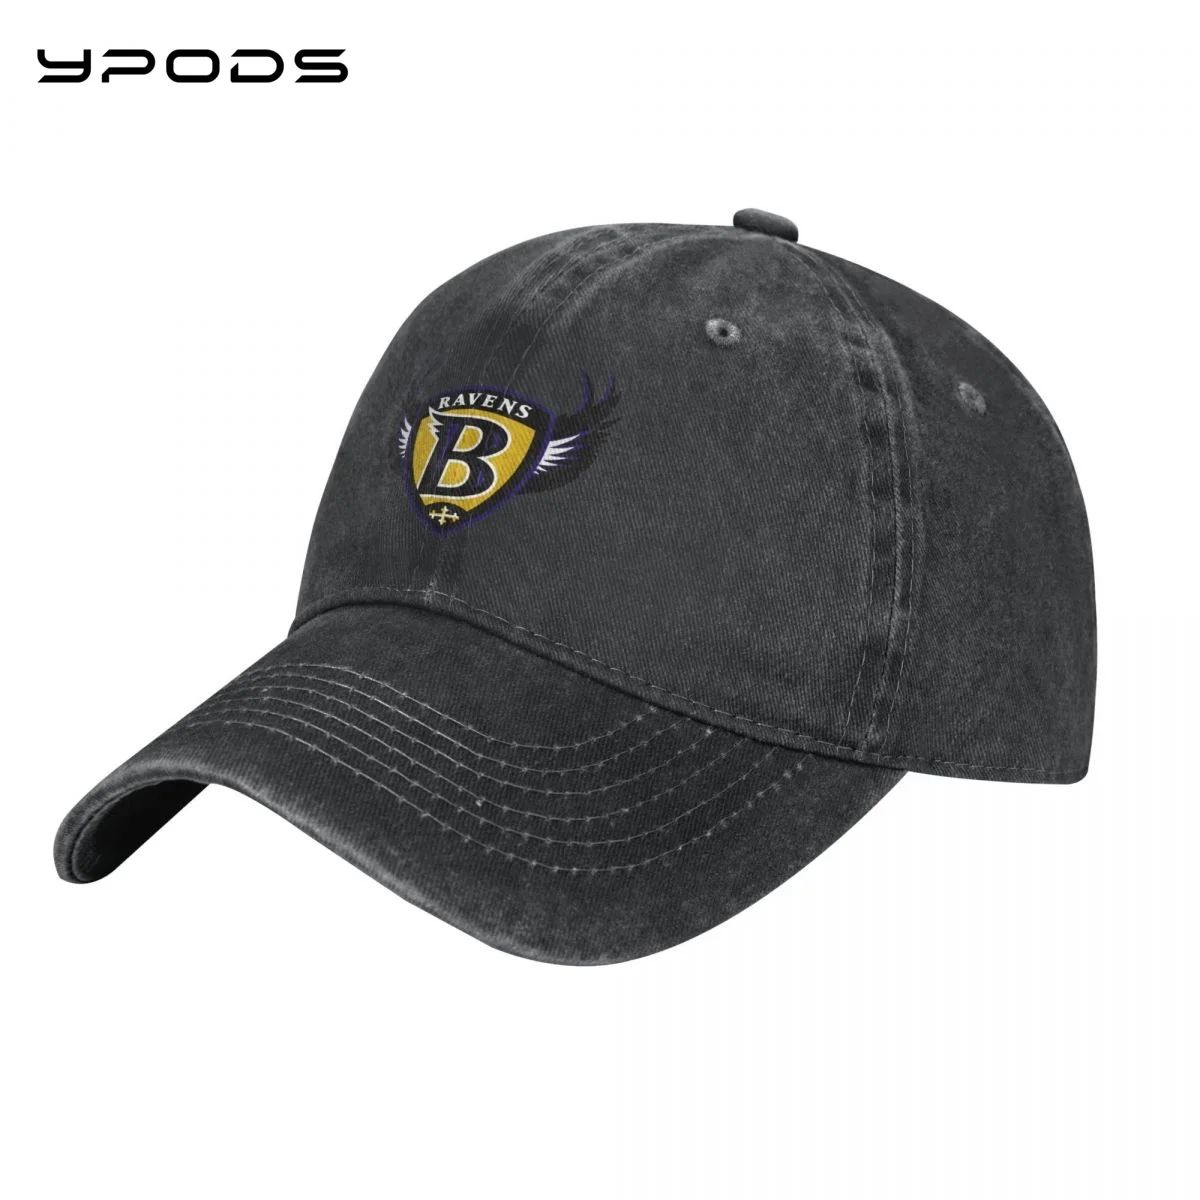 

NFL-AFCN-Baltimore_Ravens Baseball Caps for Men Women Vintage Washed Cotton Dad Hats Print Snapback Cap Hat